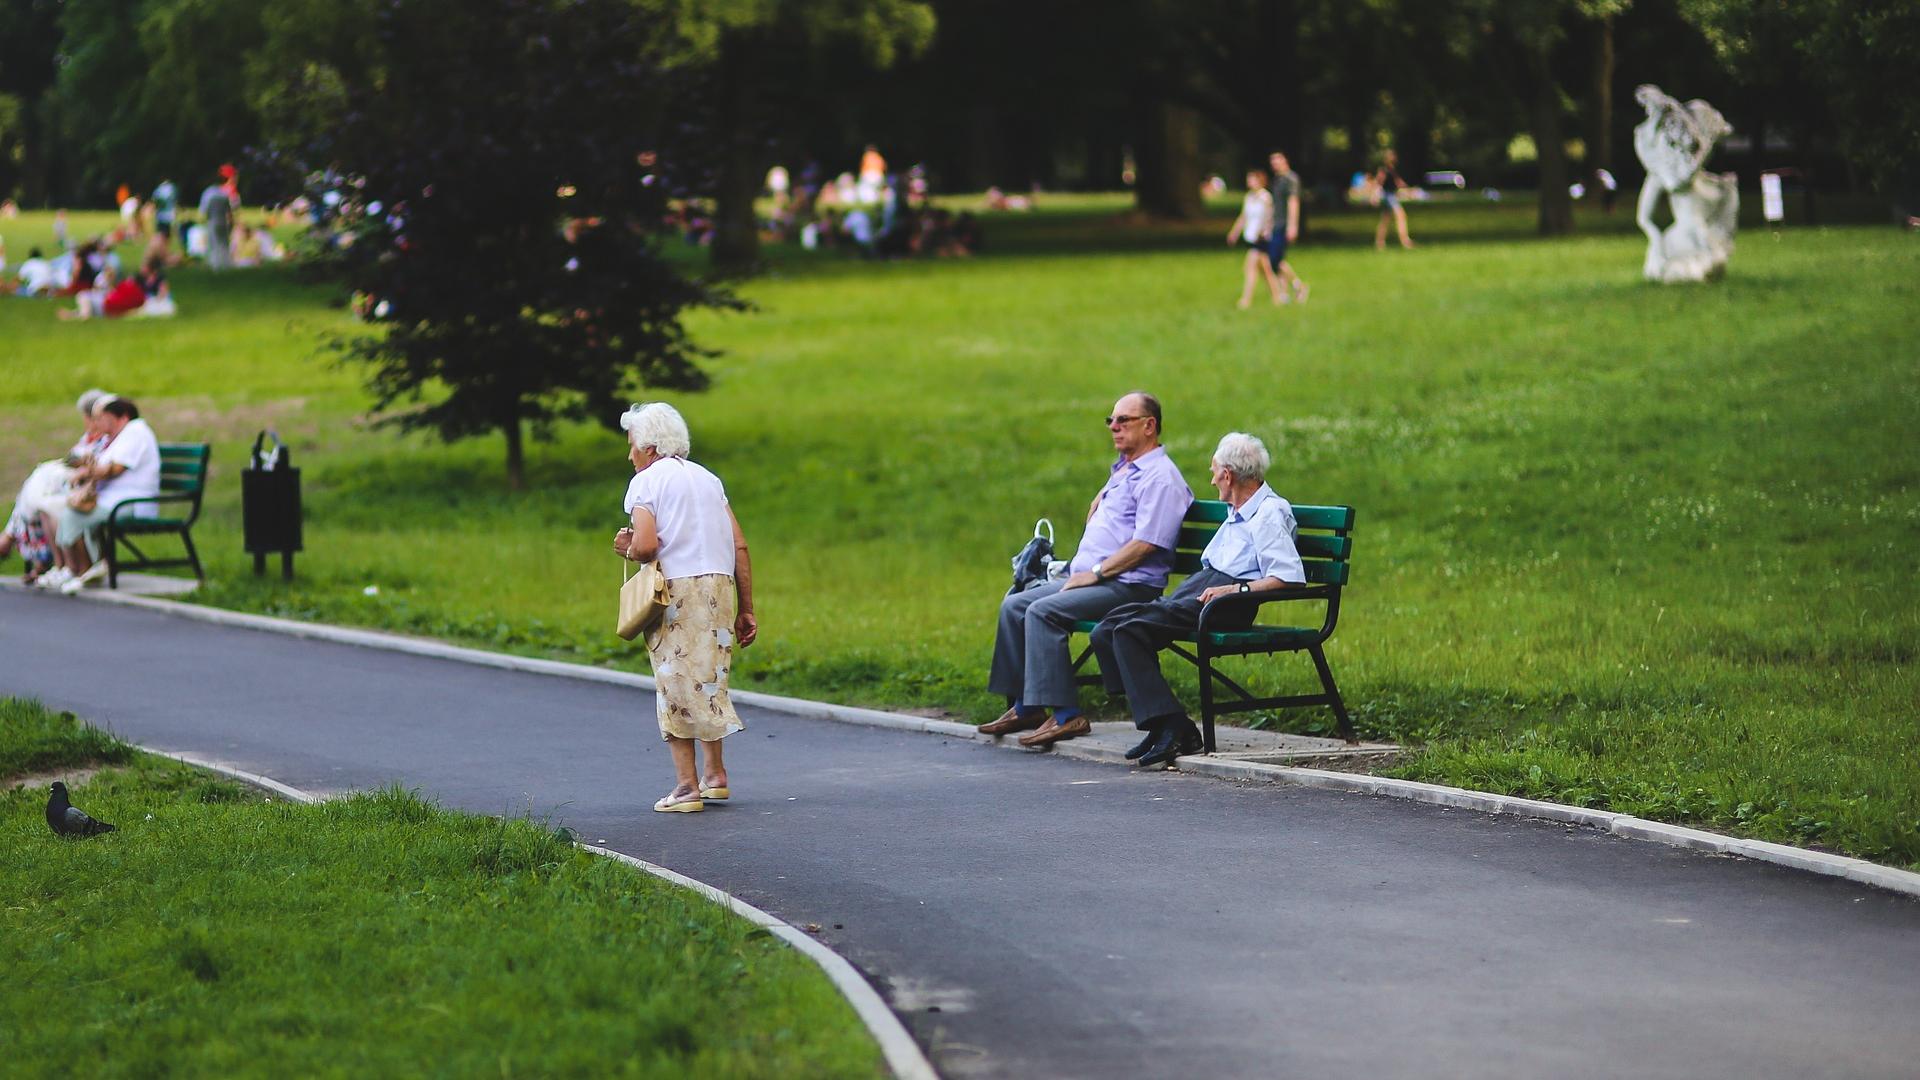 Stimmungsbild zum Beitrag: Es werden ältere Personen im Park abgebildet.